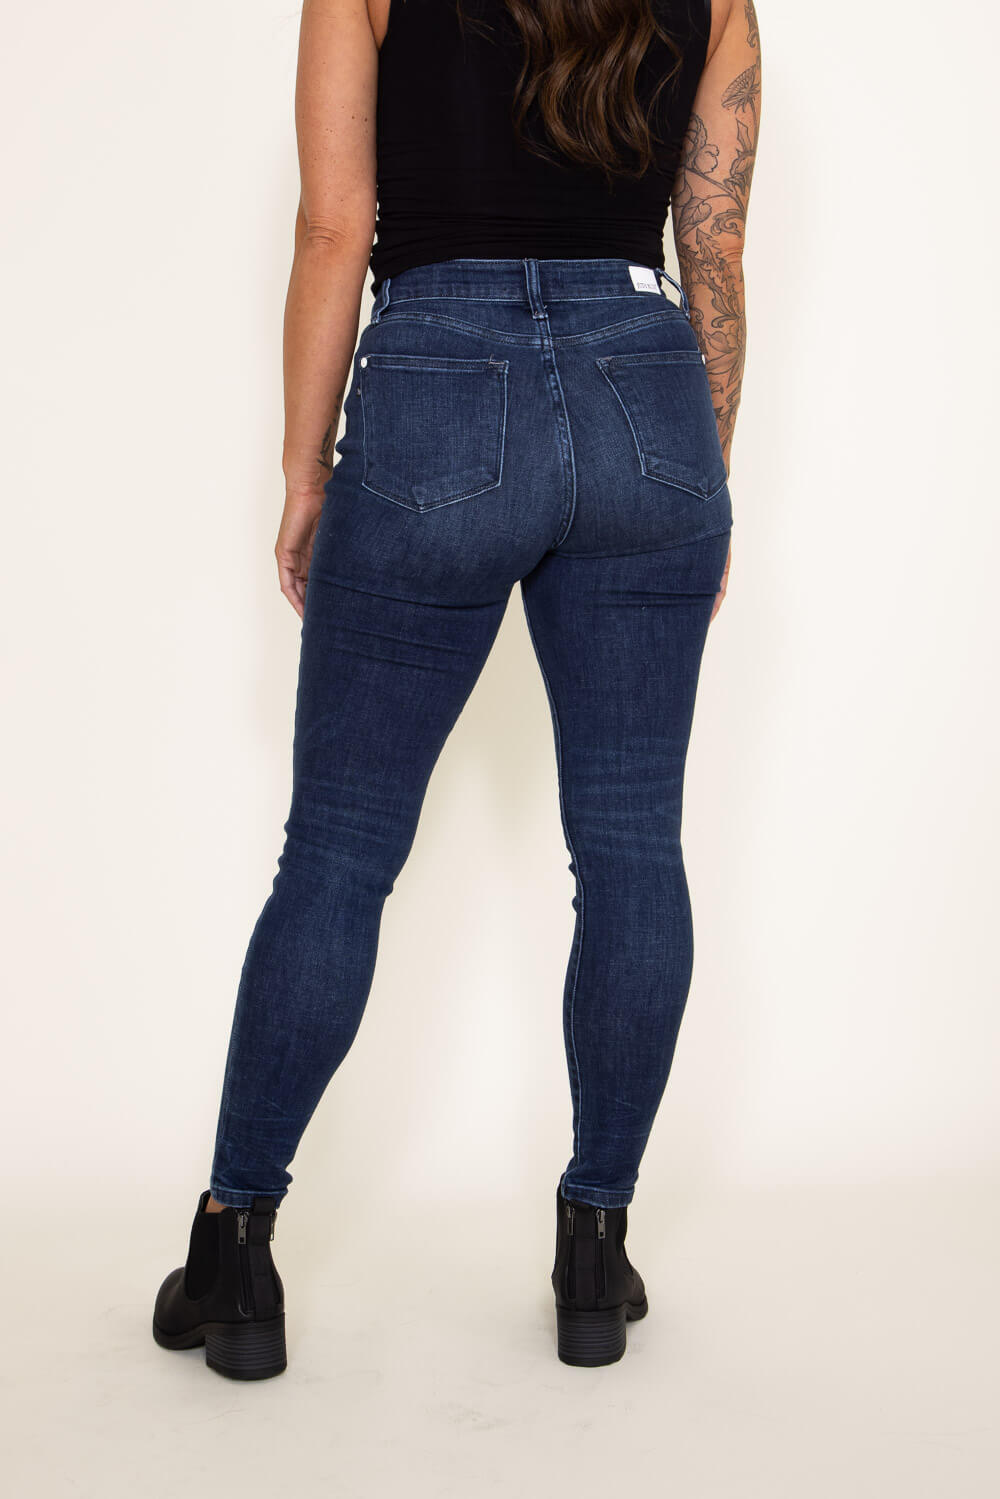 Buy Dark Blue High Rise Skinny Jeans for Women Online